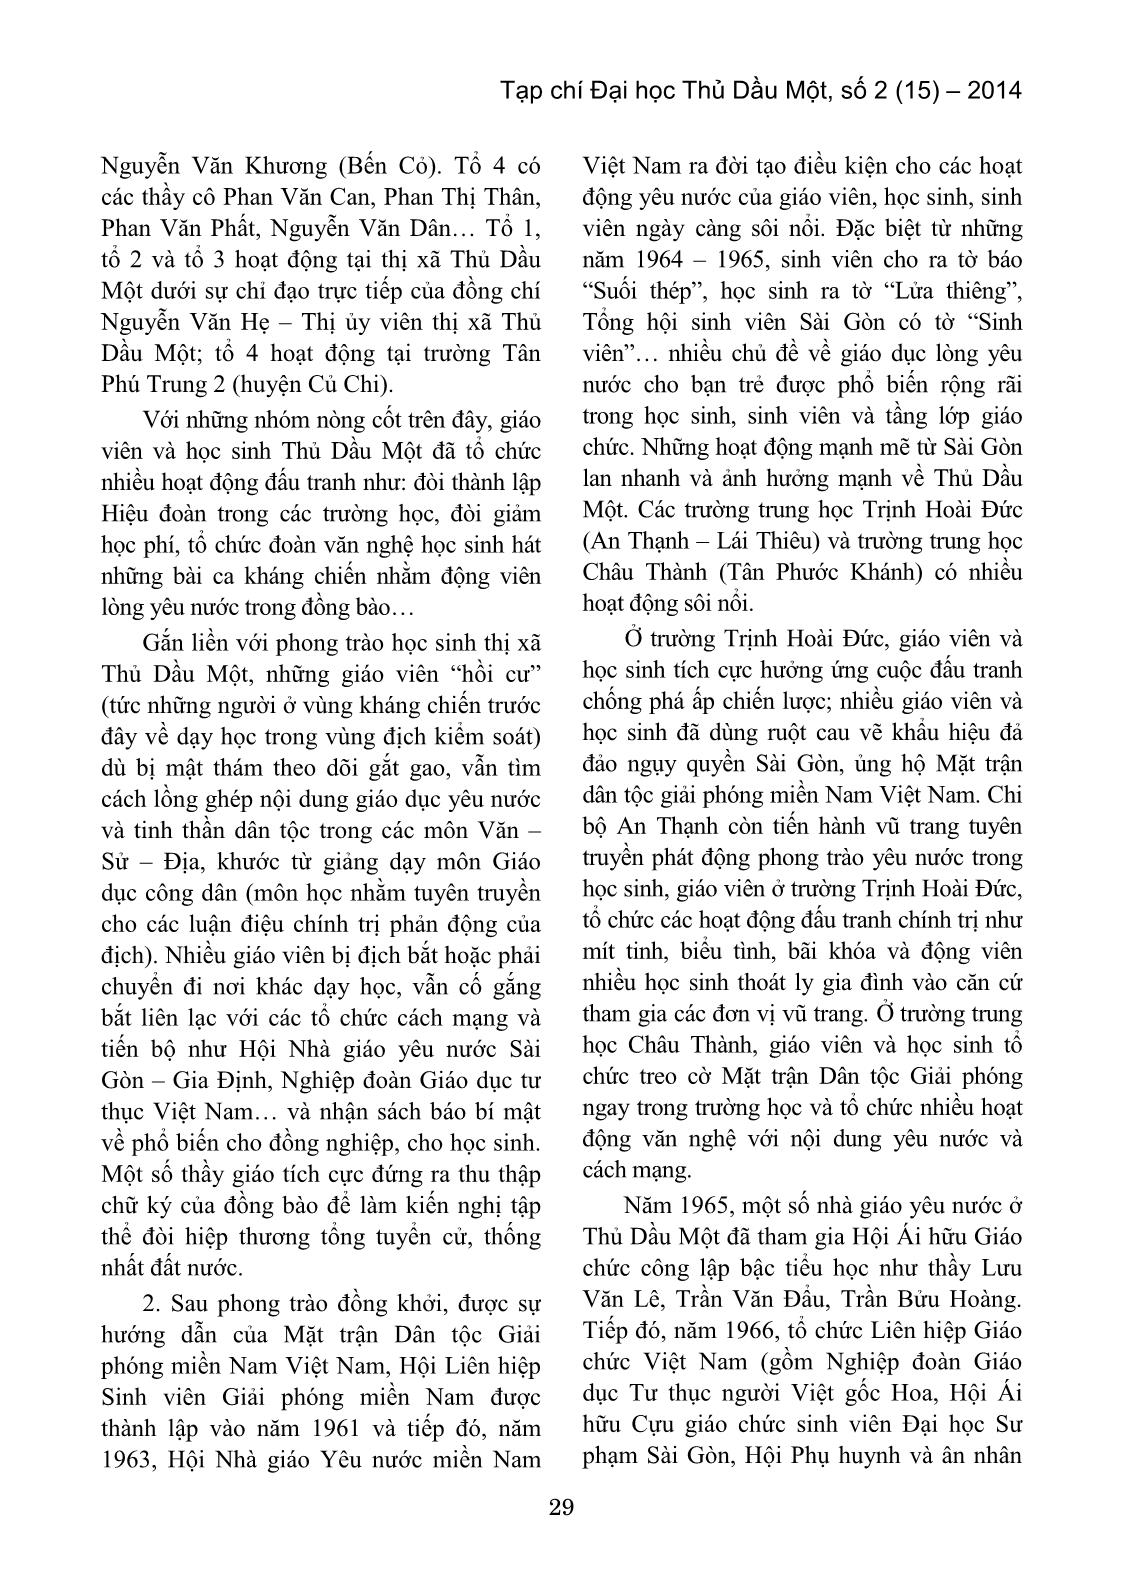 Hoạt động yêu nước của giáo viên và học sinh Thủ Dầu Một – Bình Dương trong vùng địch tạm chiếm (1954 – 1975) trang 3